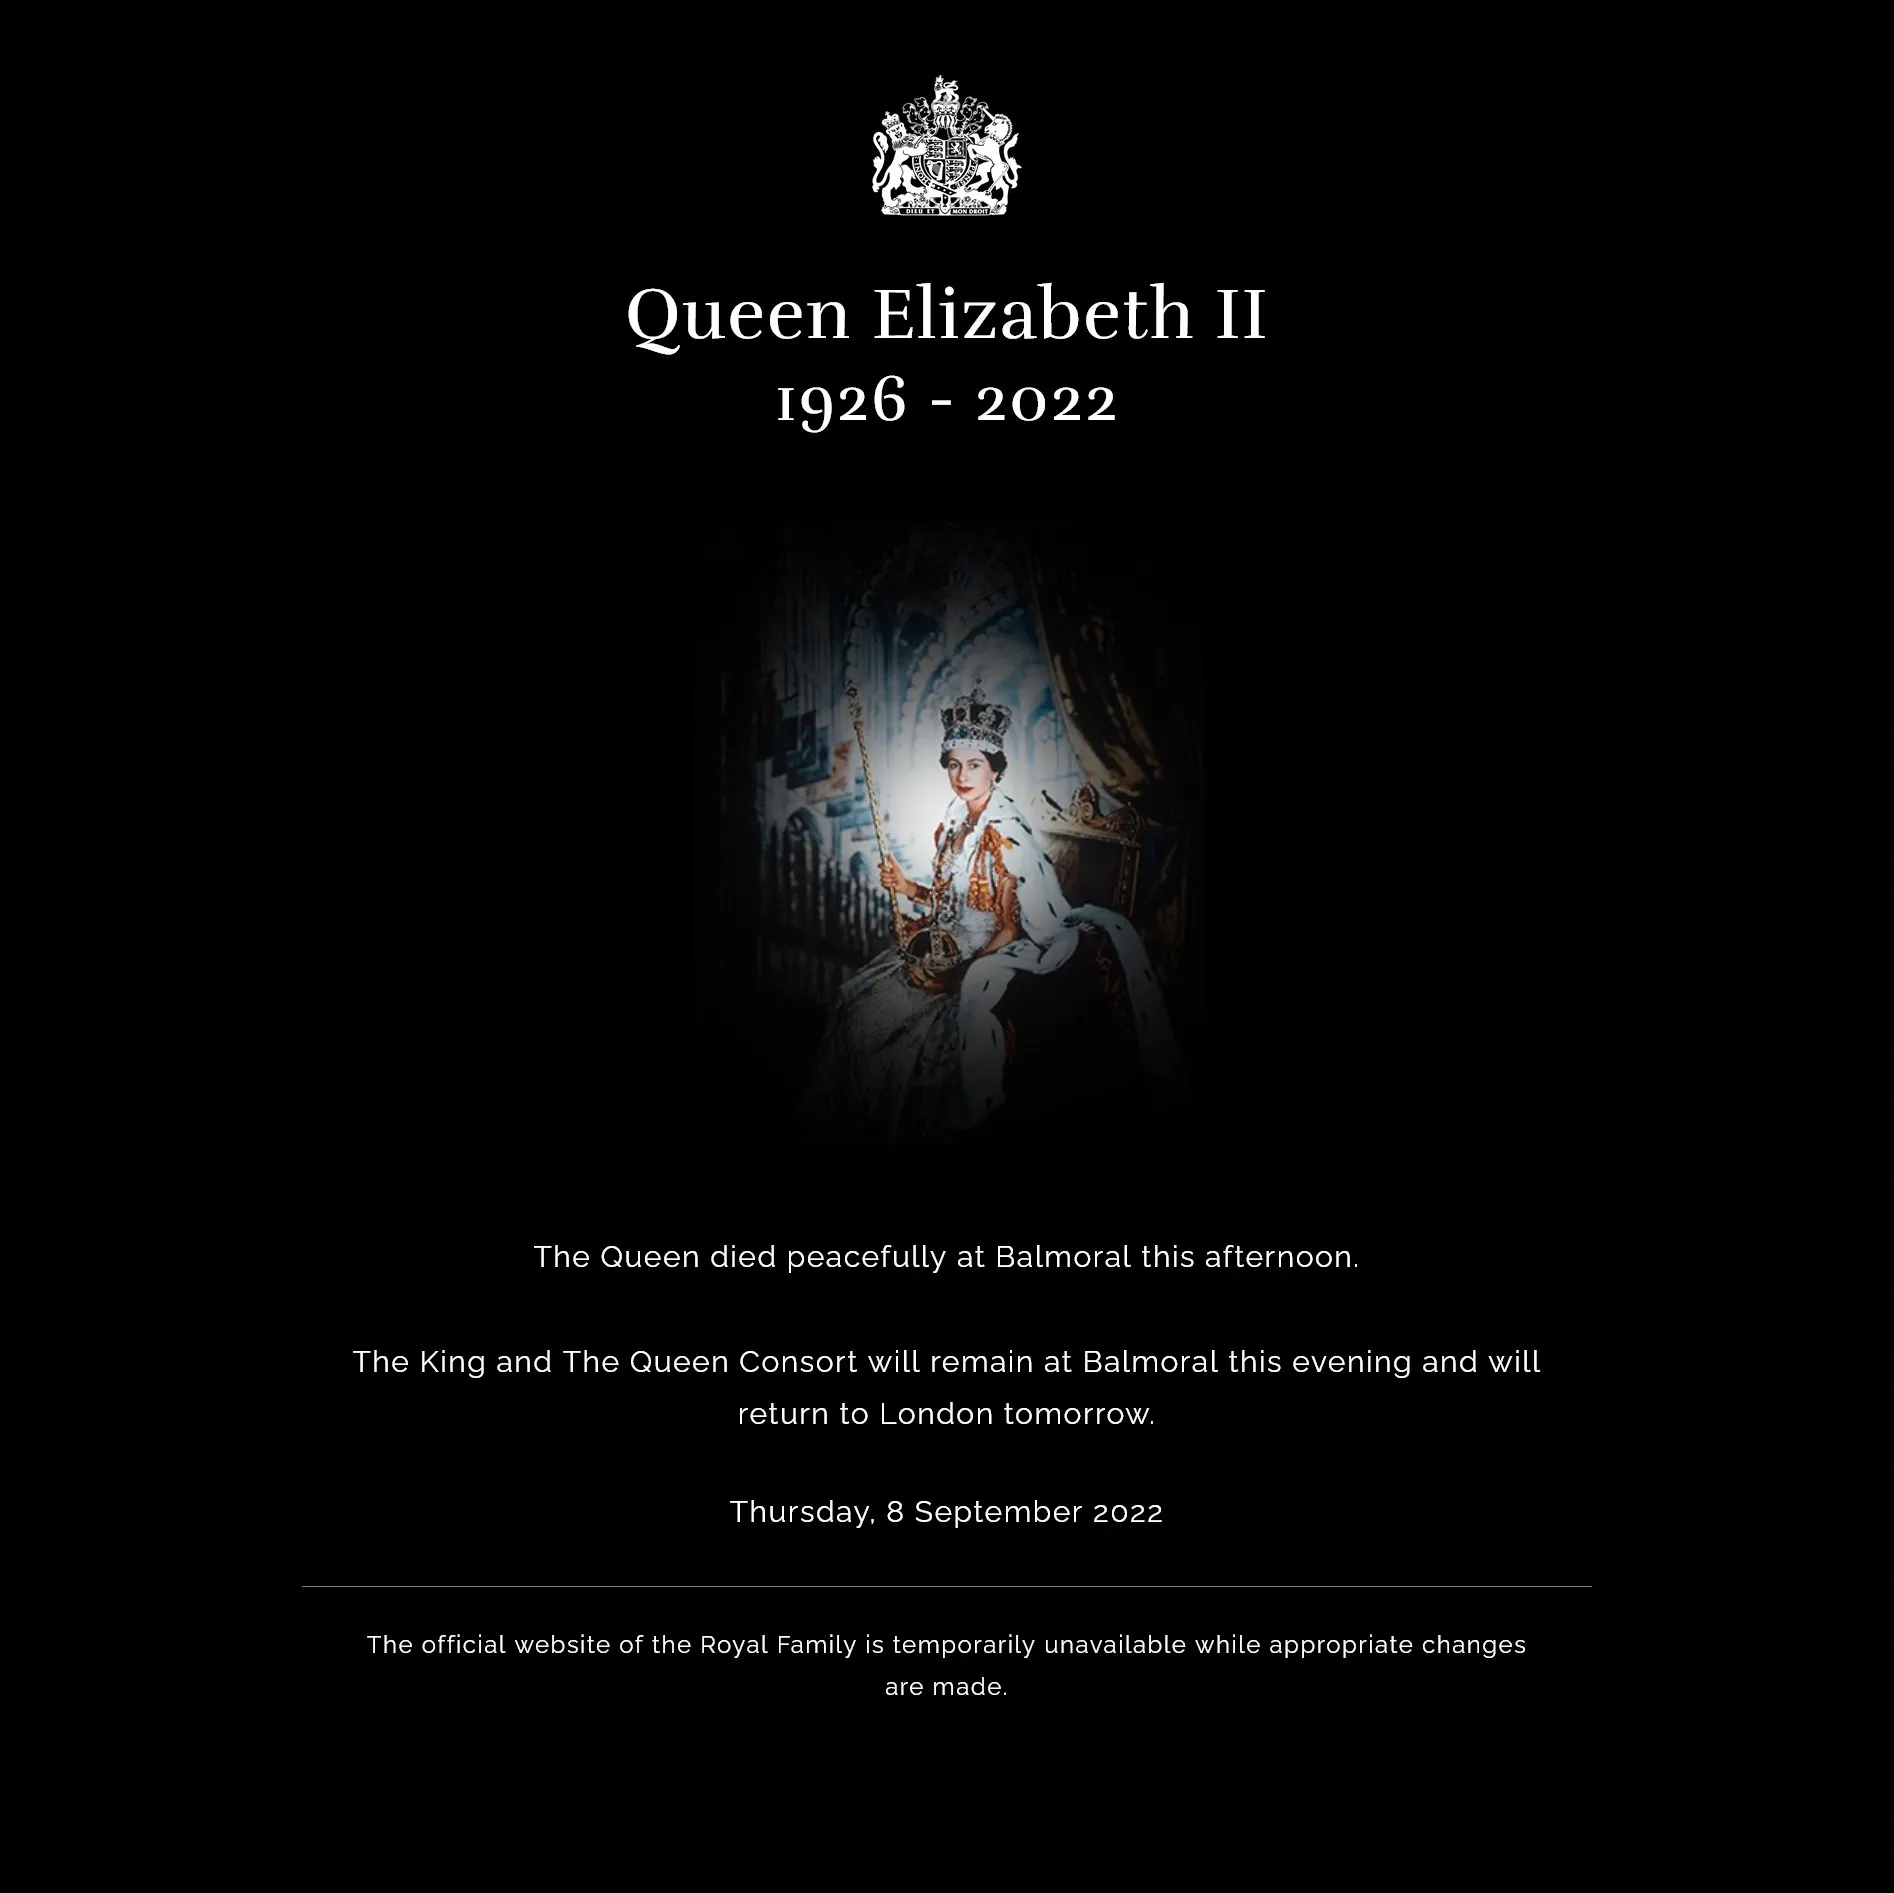 Ly kỳ chưa từng có trong lịch sử: Nữ hoàng Elizabeth II băng hà, dinh thự xuất hiện hiện tượng lạ khiến toàn dân bàng hoàng